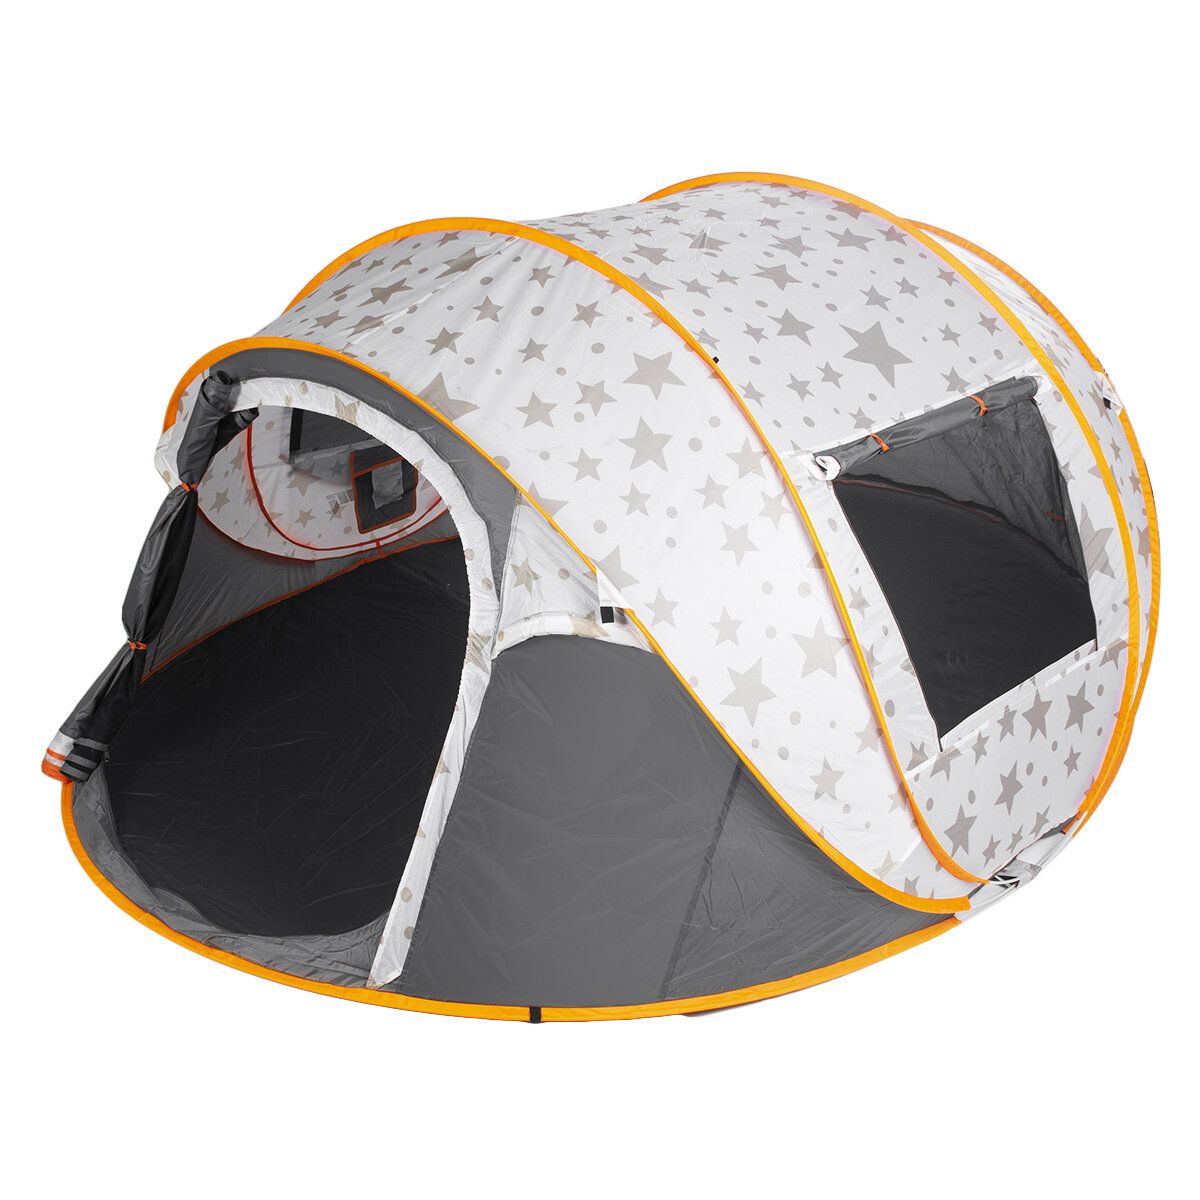 Campingzelt für 5-6 Personen Strandzelt Familien-Sonnenschutzdach Doppeltüriges automatisches Vordach Outdoor-Reise